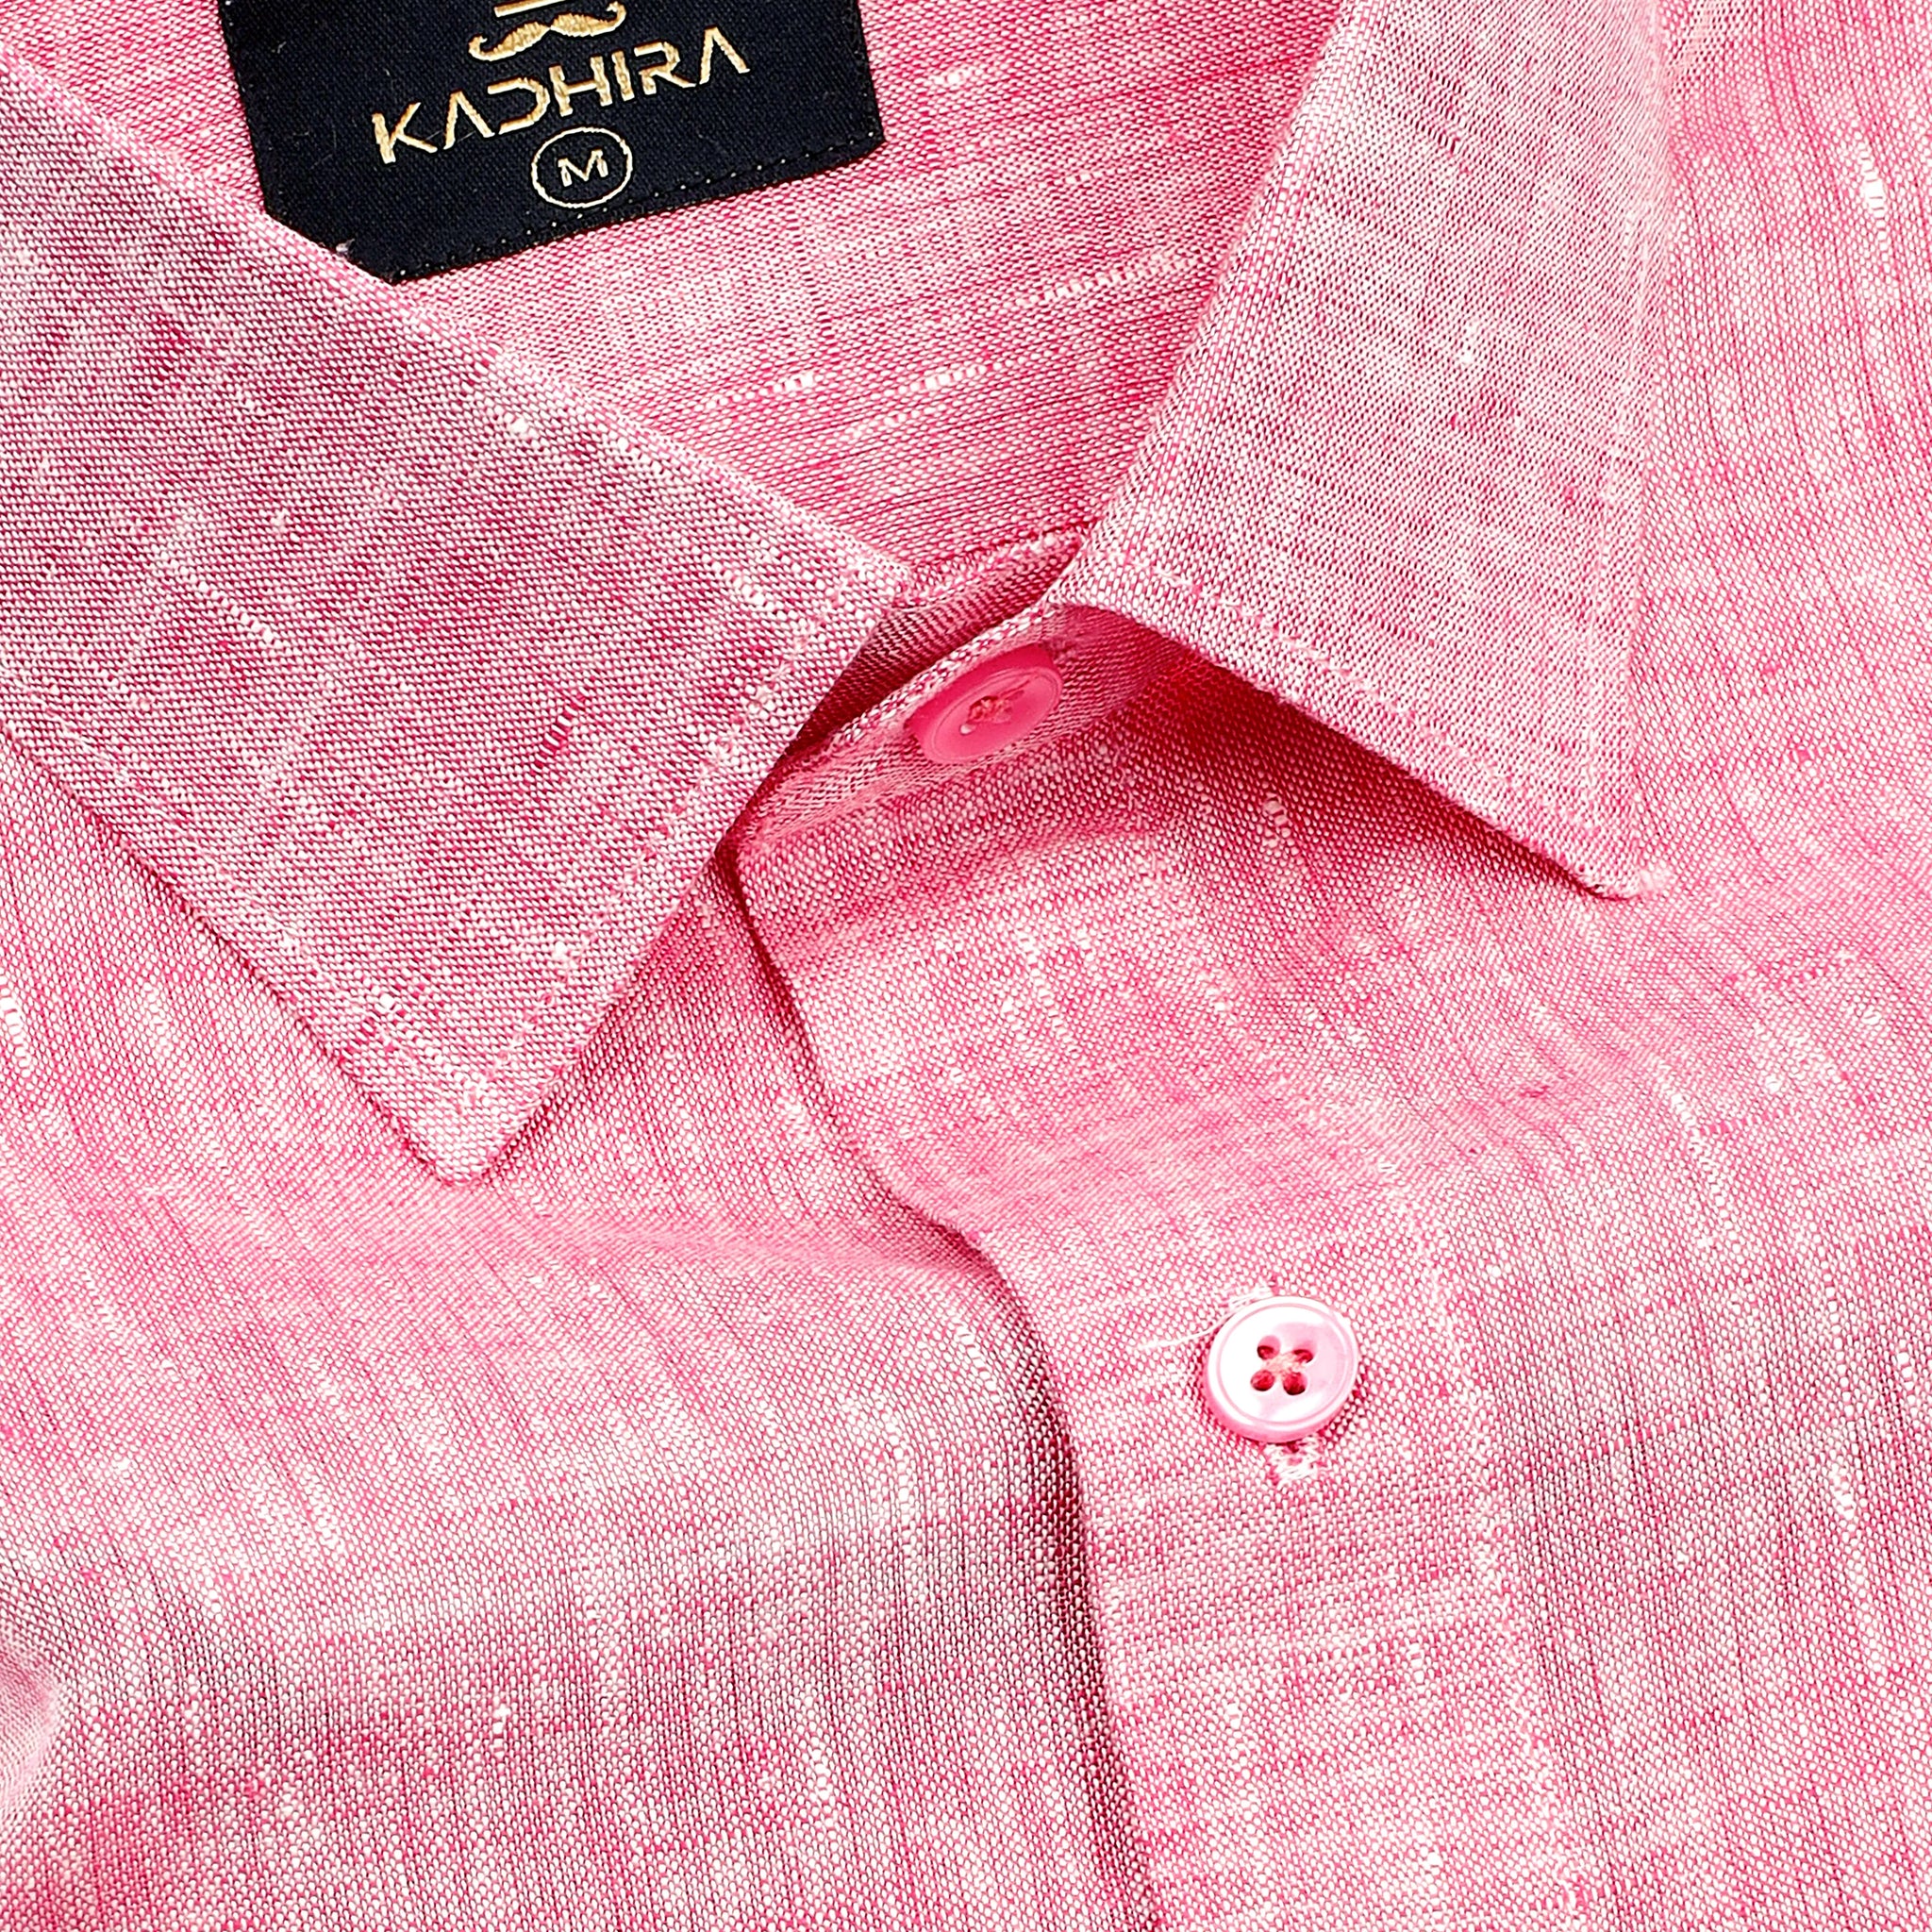 Carnation Pink Super Luxurious Linen Shirt